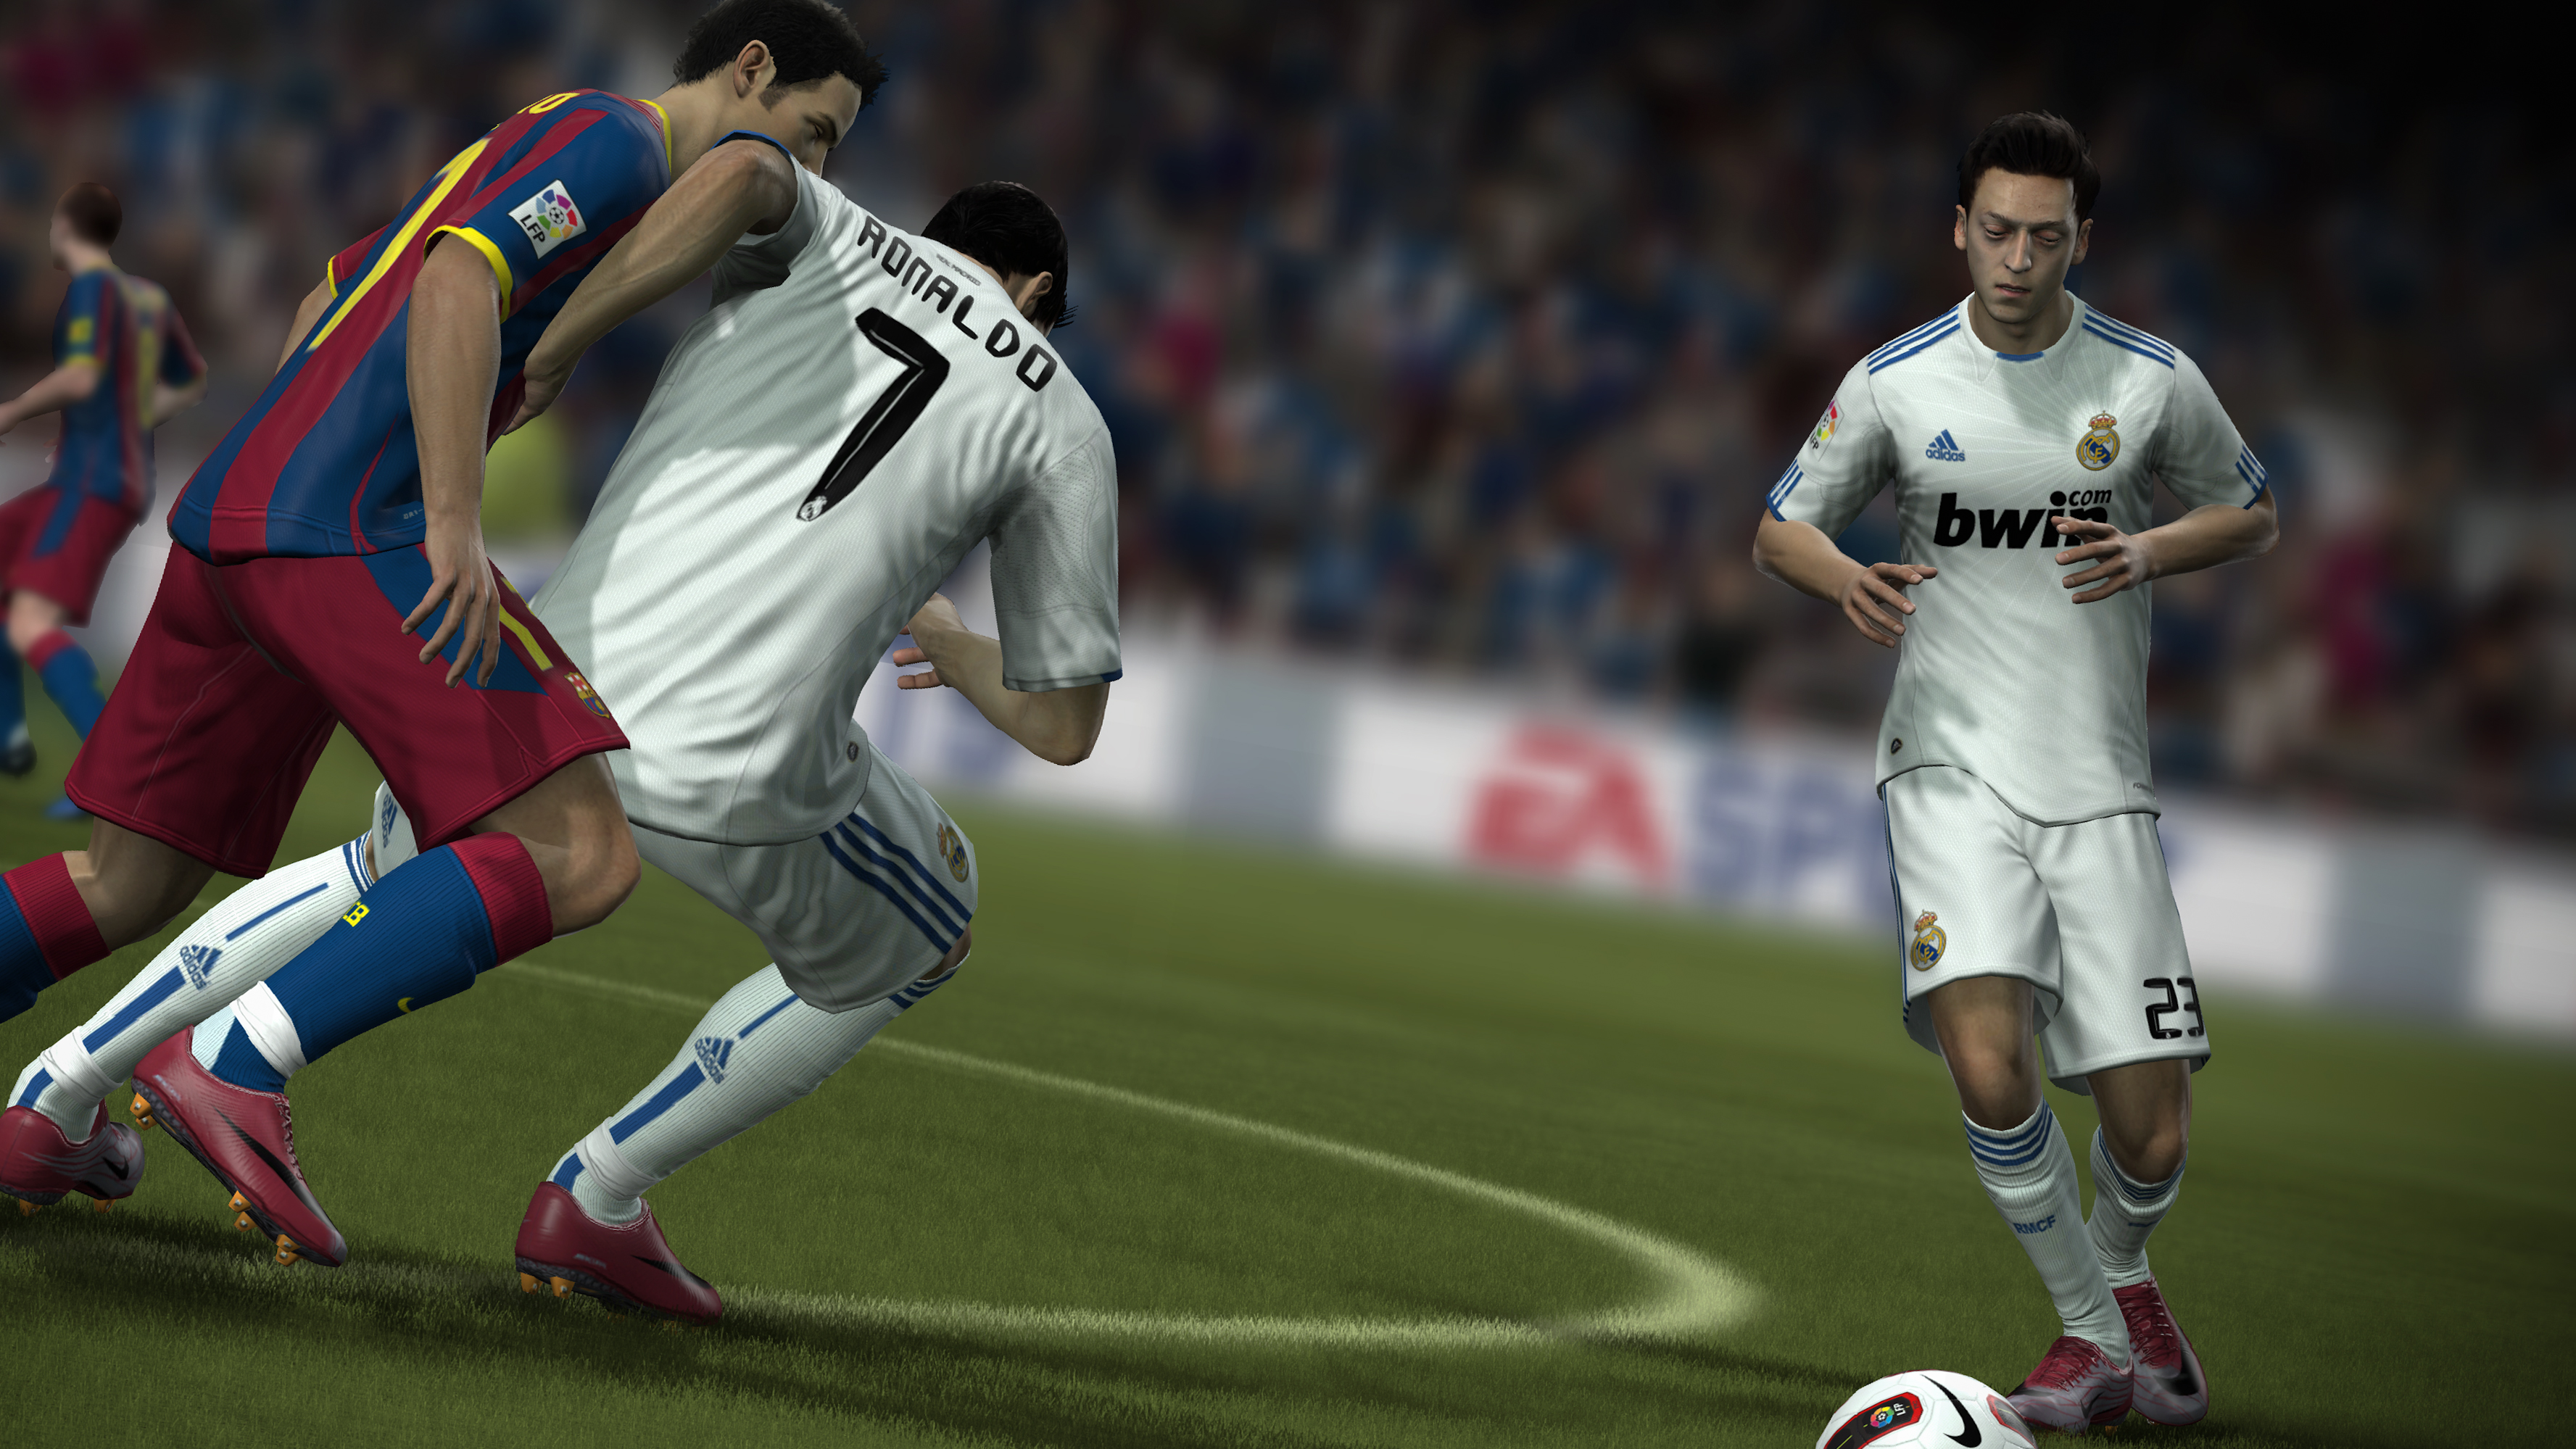 Immagine pubblicata in relazione al seguente contenuto: Electronic Arts rilascia la demo per PC di FIFA Soccer 12 | Nome immagine: news15707_2.jpg